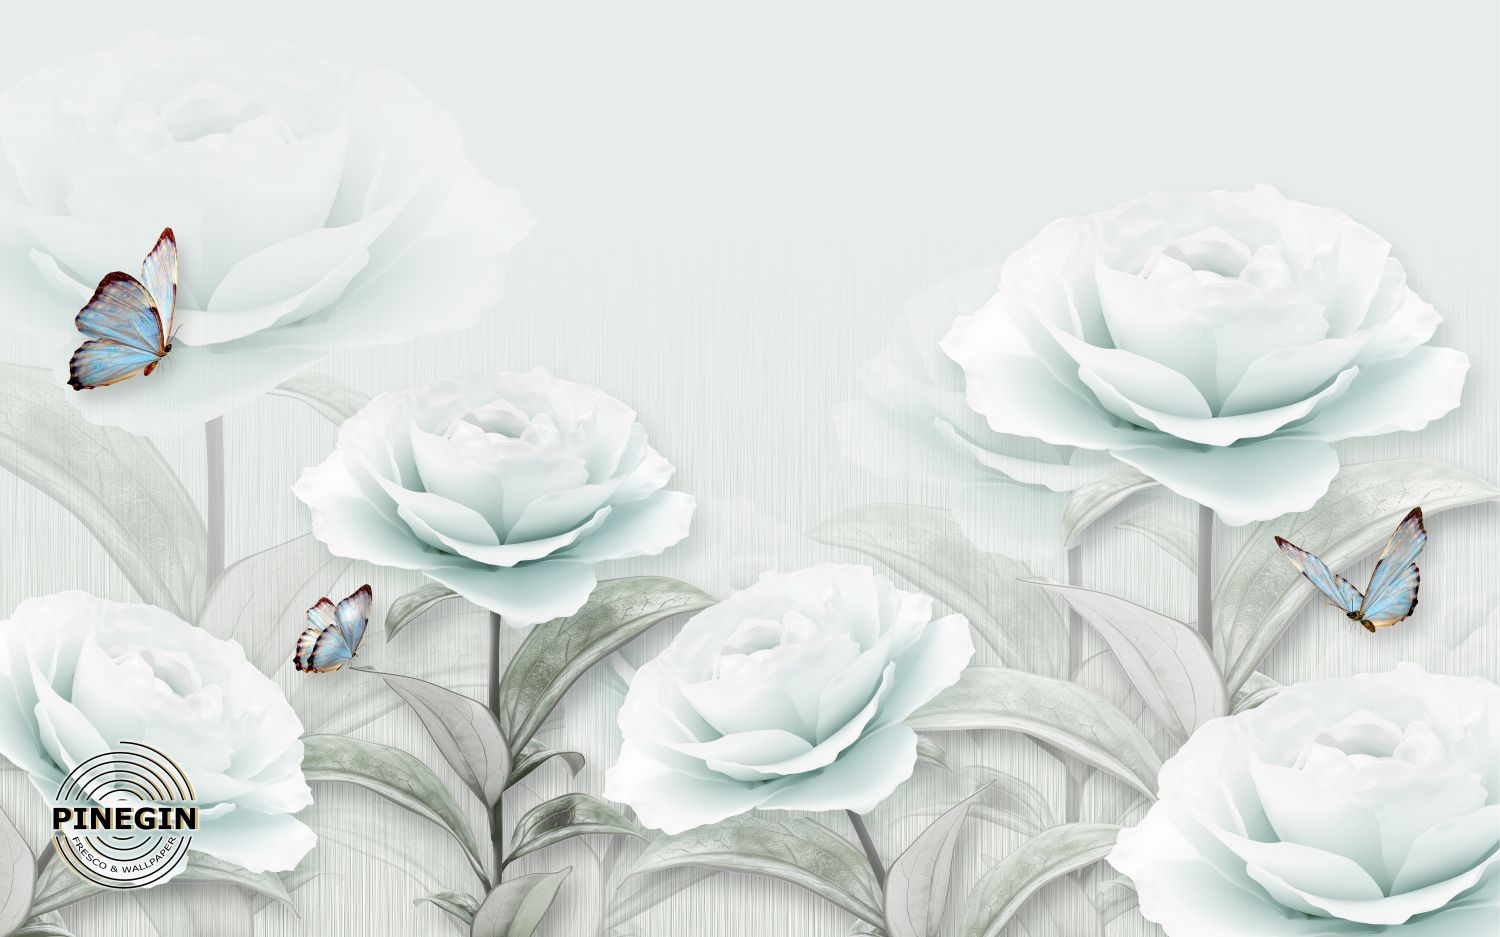 Фреска «Белоснежные розы » - фото (1)